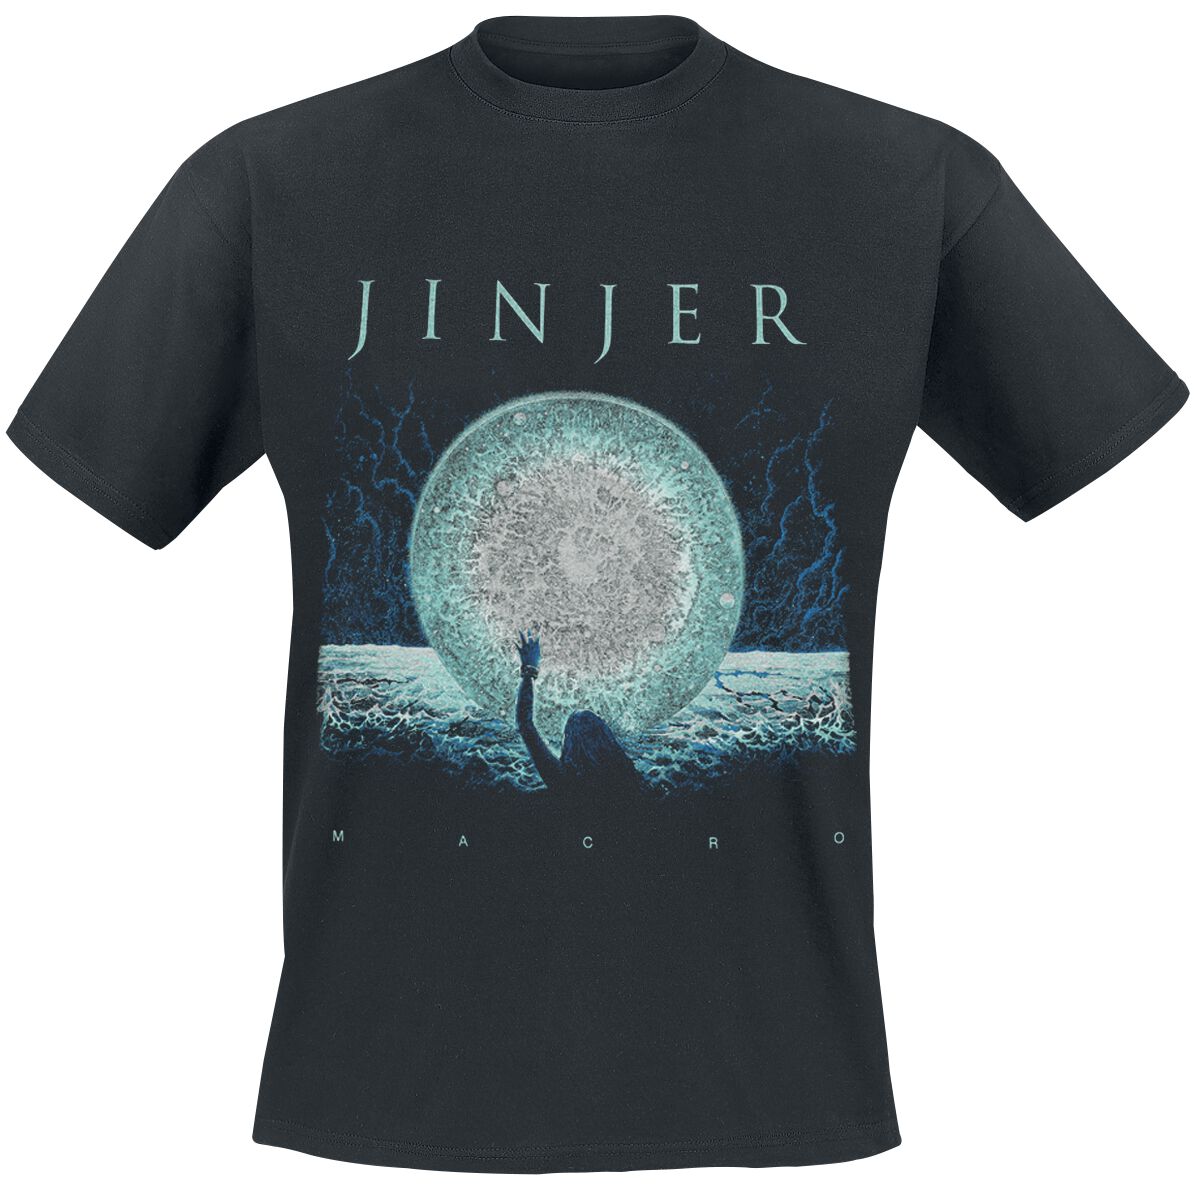 Jinjer T-Shirt - Macro - S bis 3XL - für Männer - Größe XL - schwarz  - Lizenziertes Merchandise!